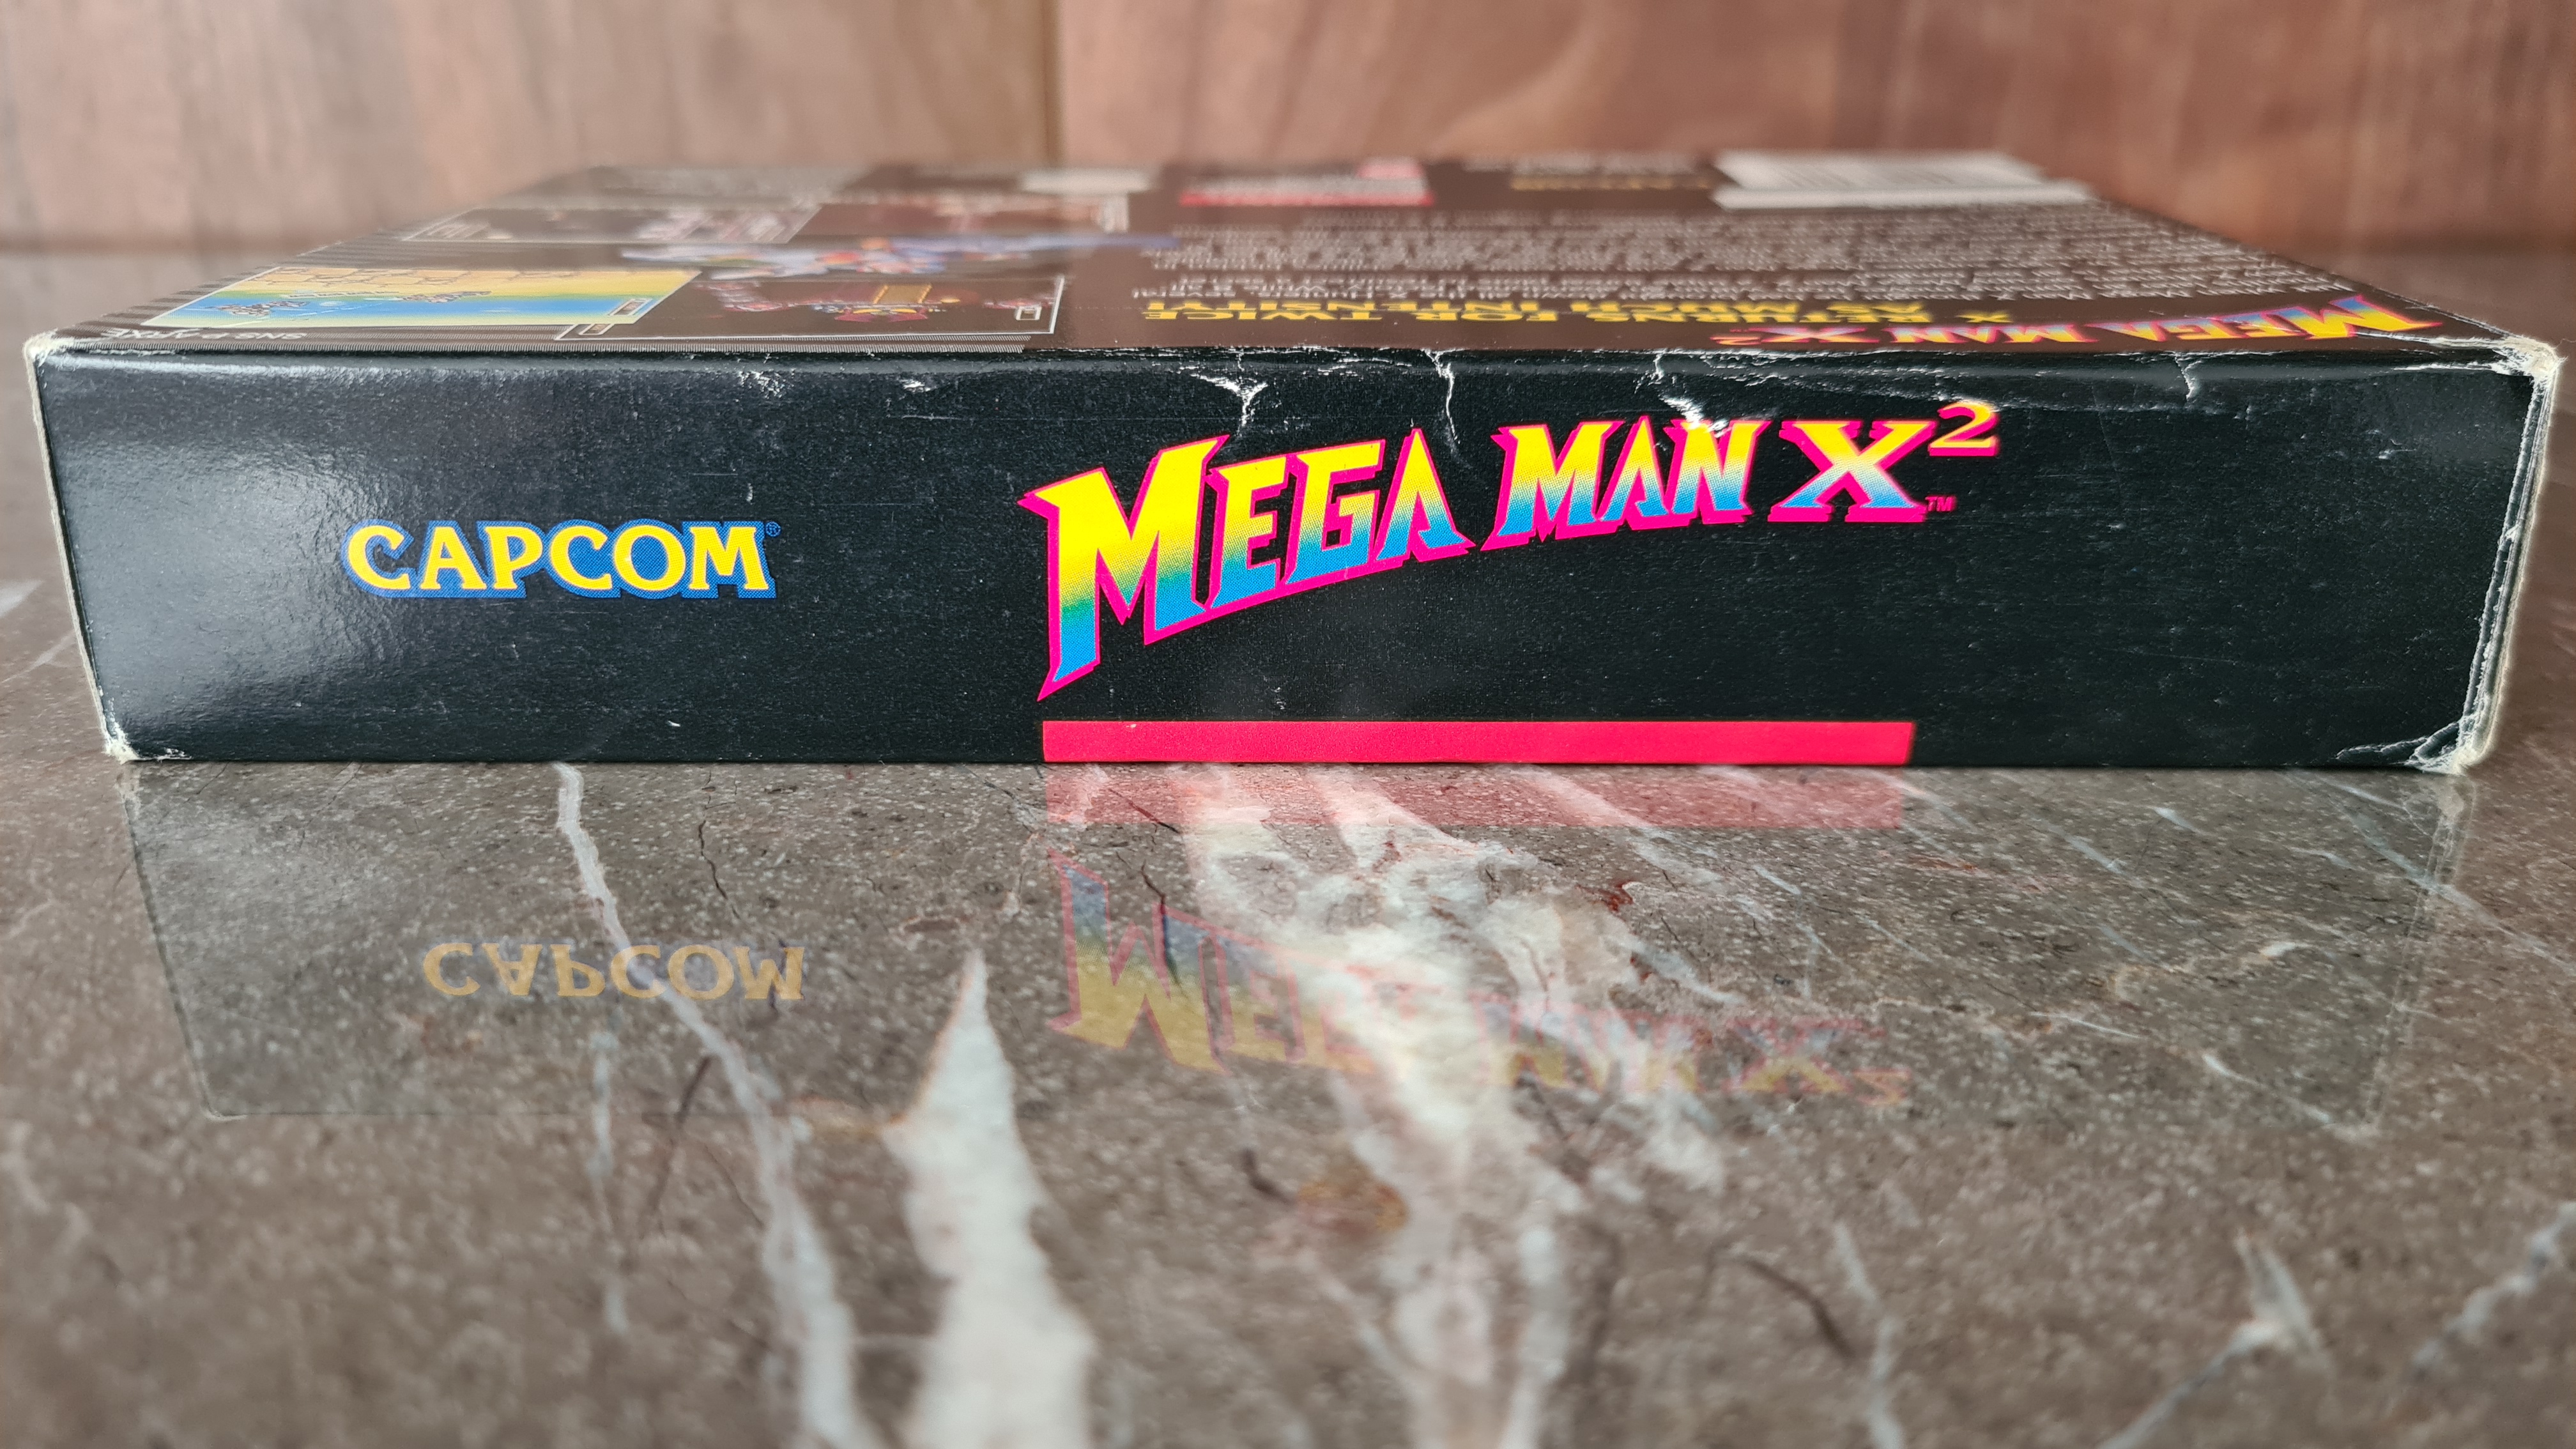 Mega Man X2 (Super Nintendo) Seminuevo